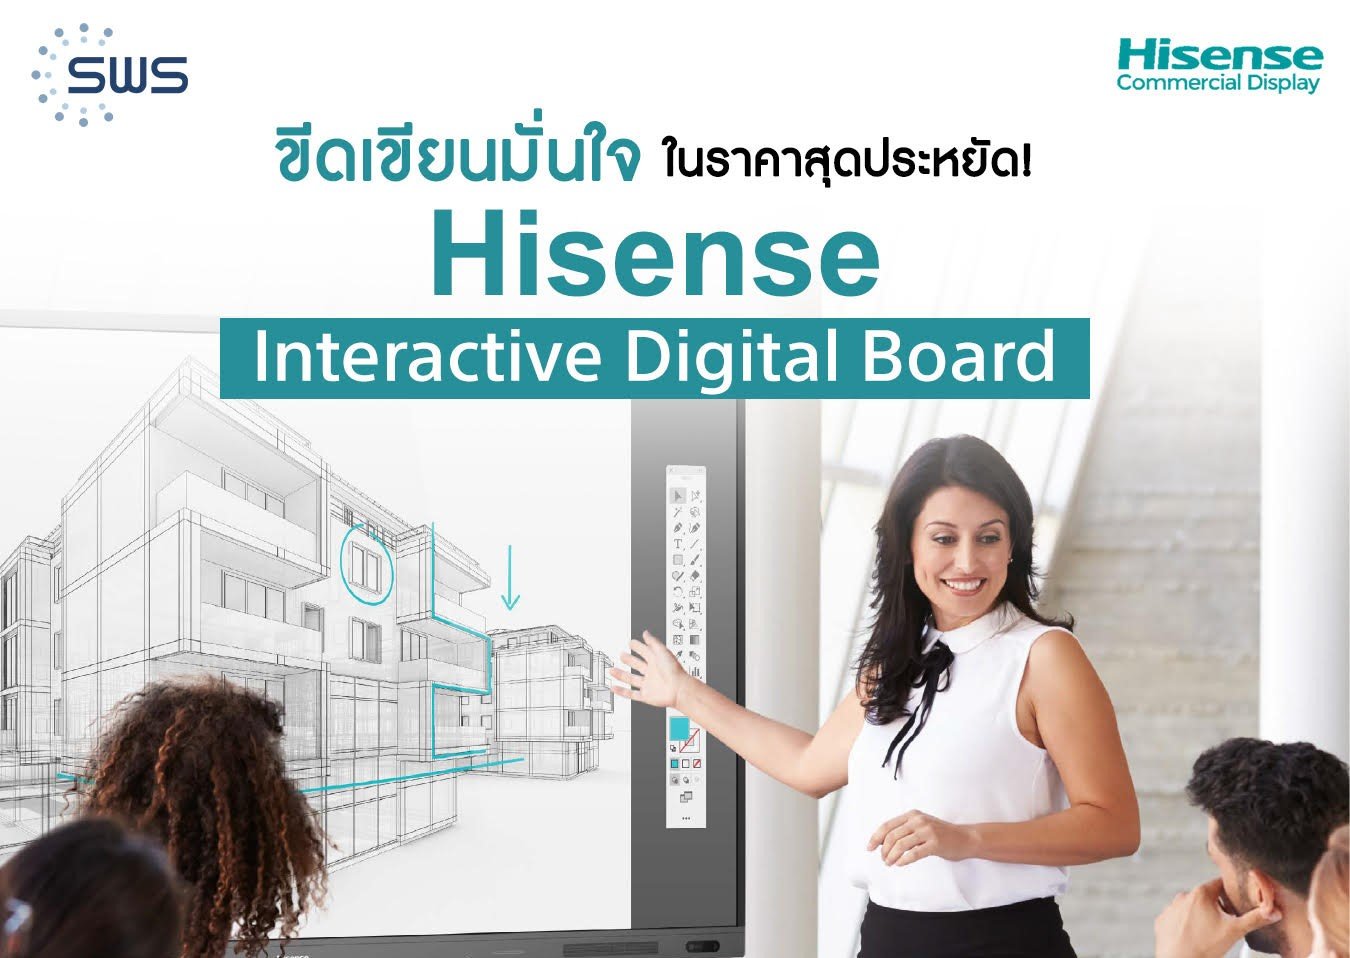 Hisense Interactive Digital Board ขีดเขียนมั่นใจ ในราคาสุดประหยัด!